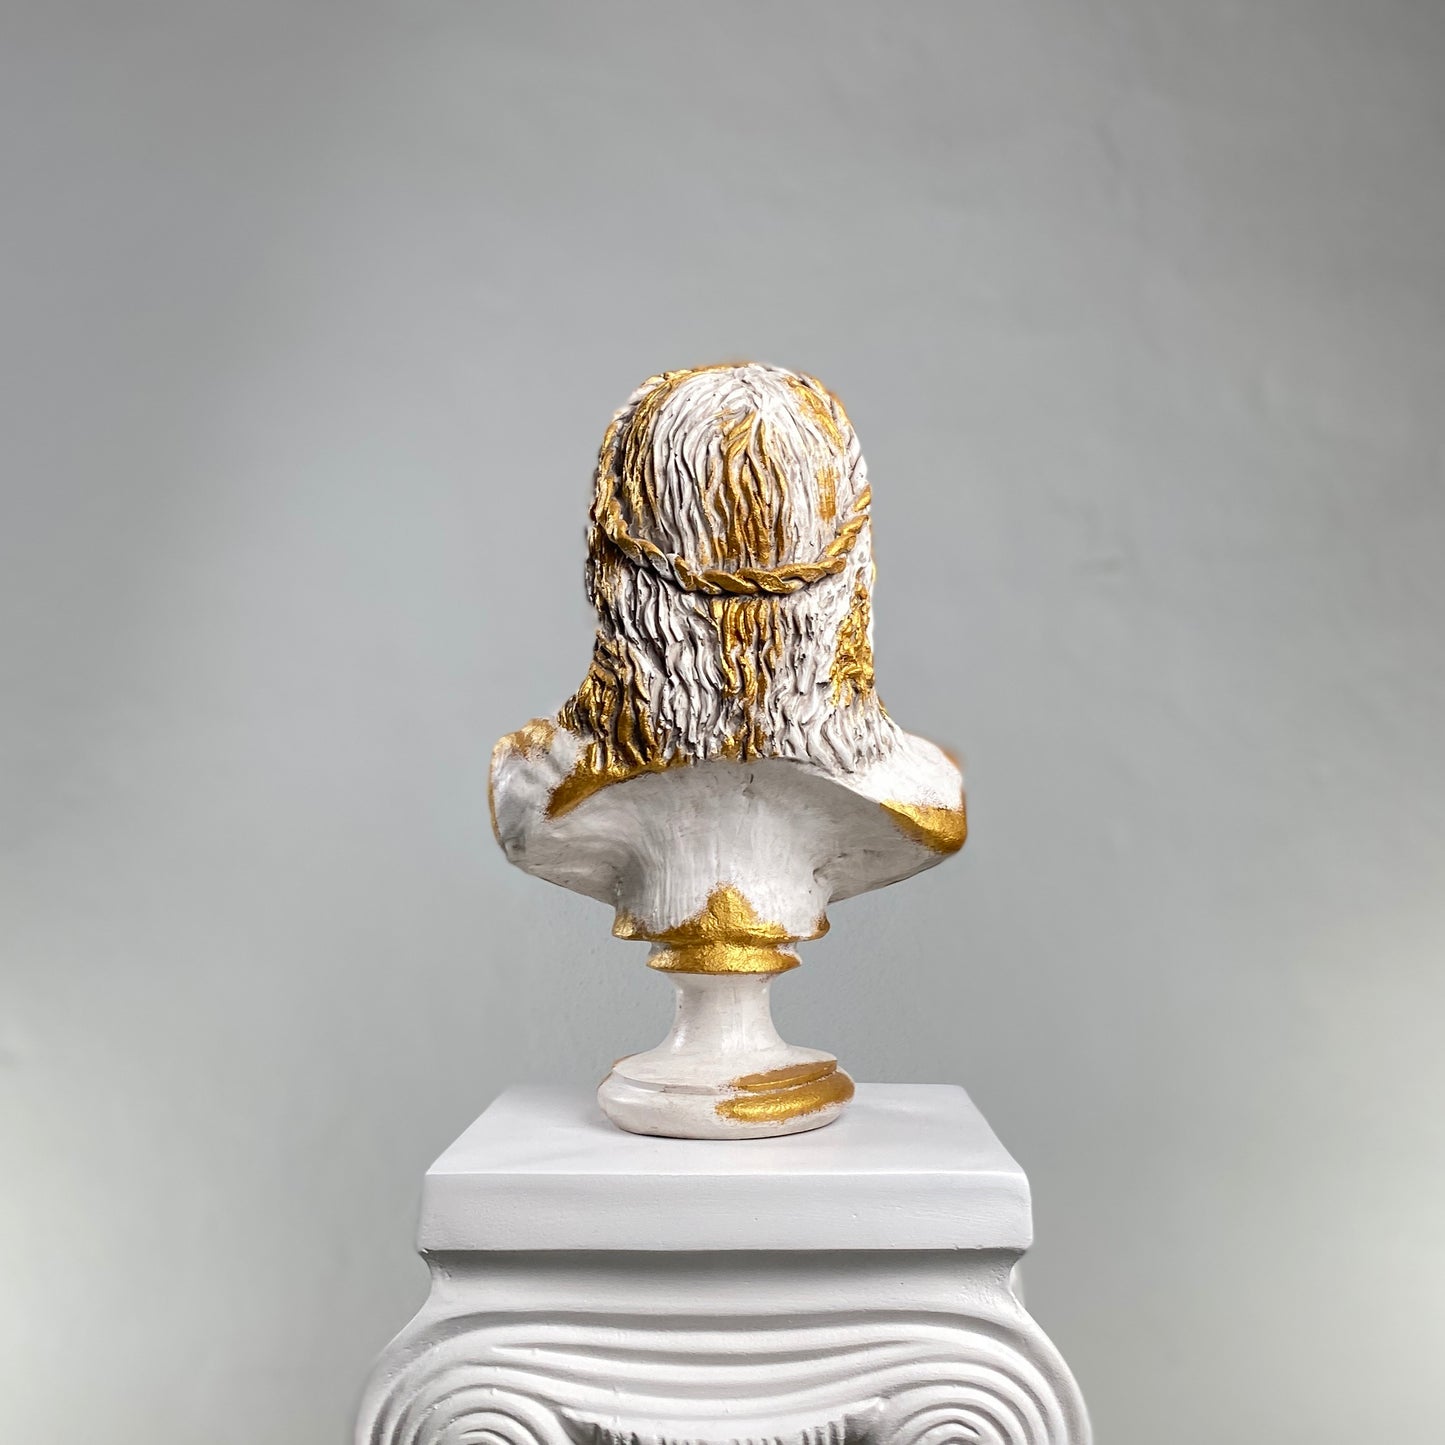 Zeus 'Antique Gold' Pop Art Sculpture, Modern Home Decor